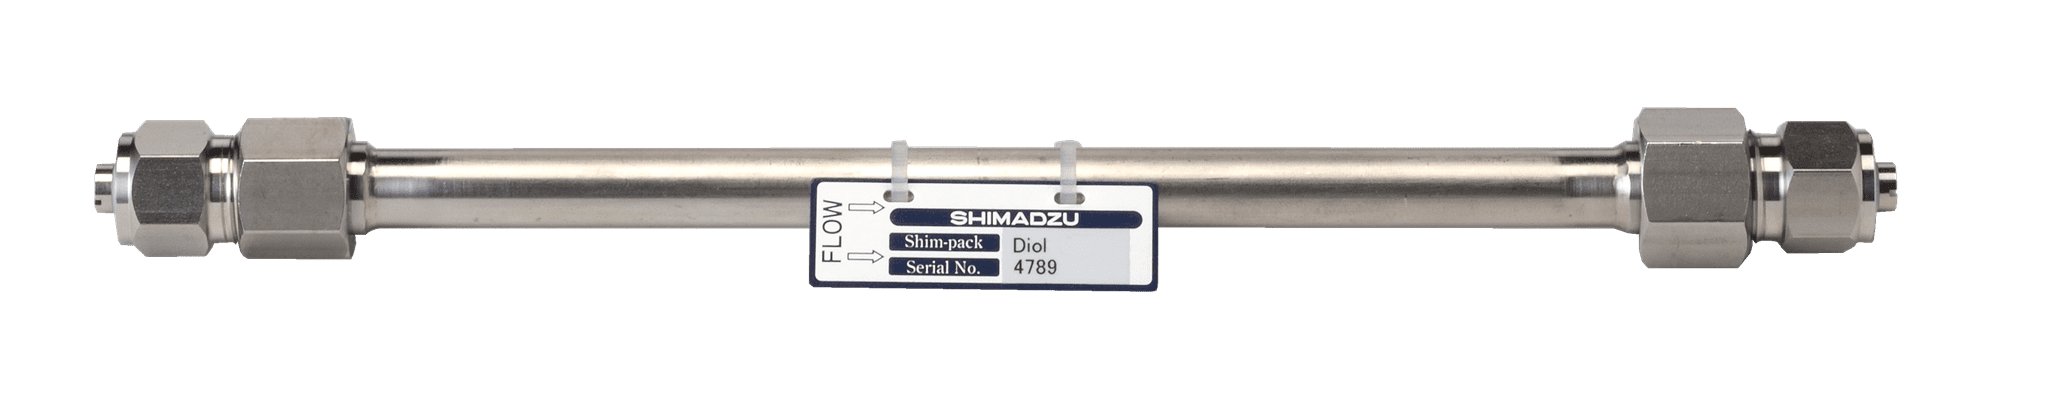 Image de Shim-pack Diol-300; 5 µm; 250 x 7.9